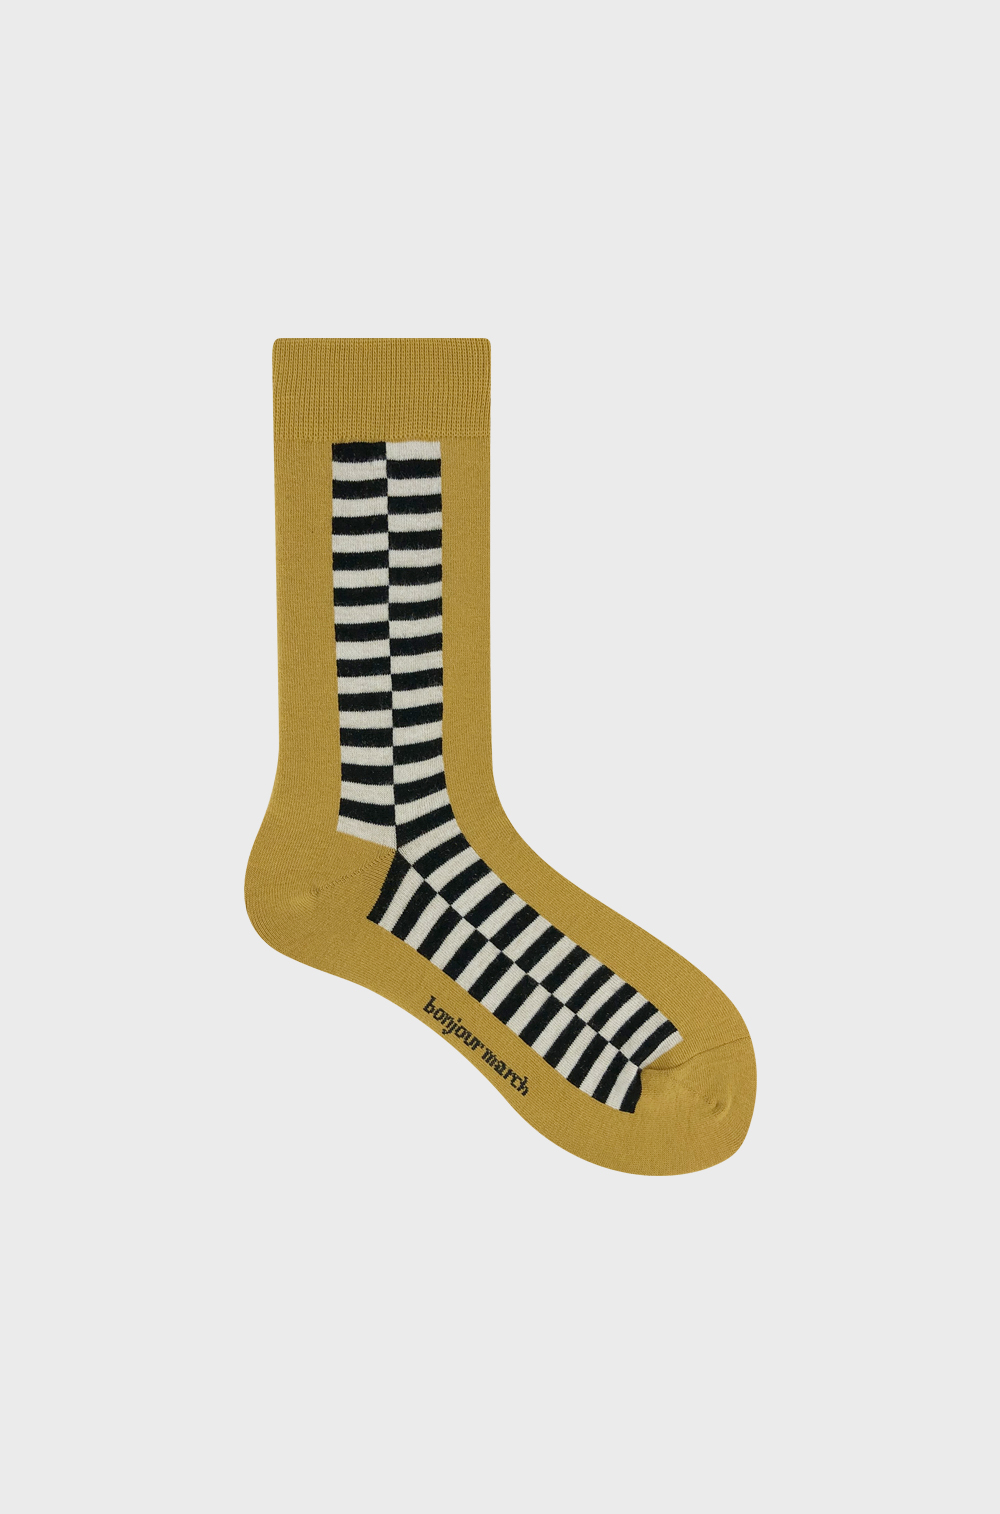 Plane figure socks_mustard